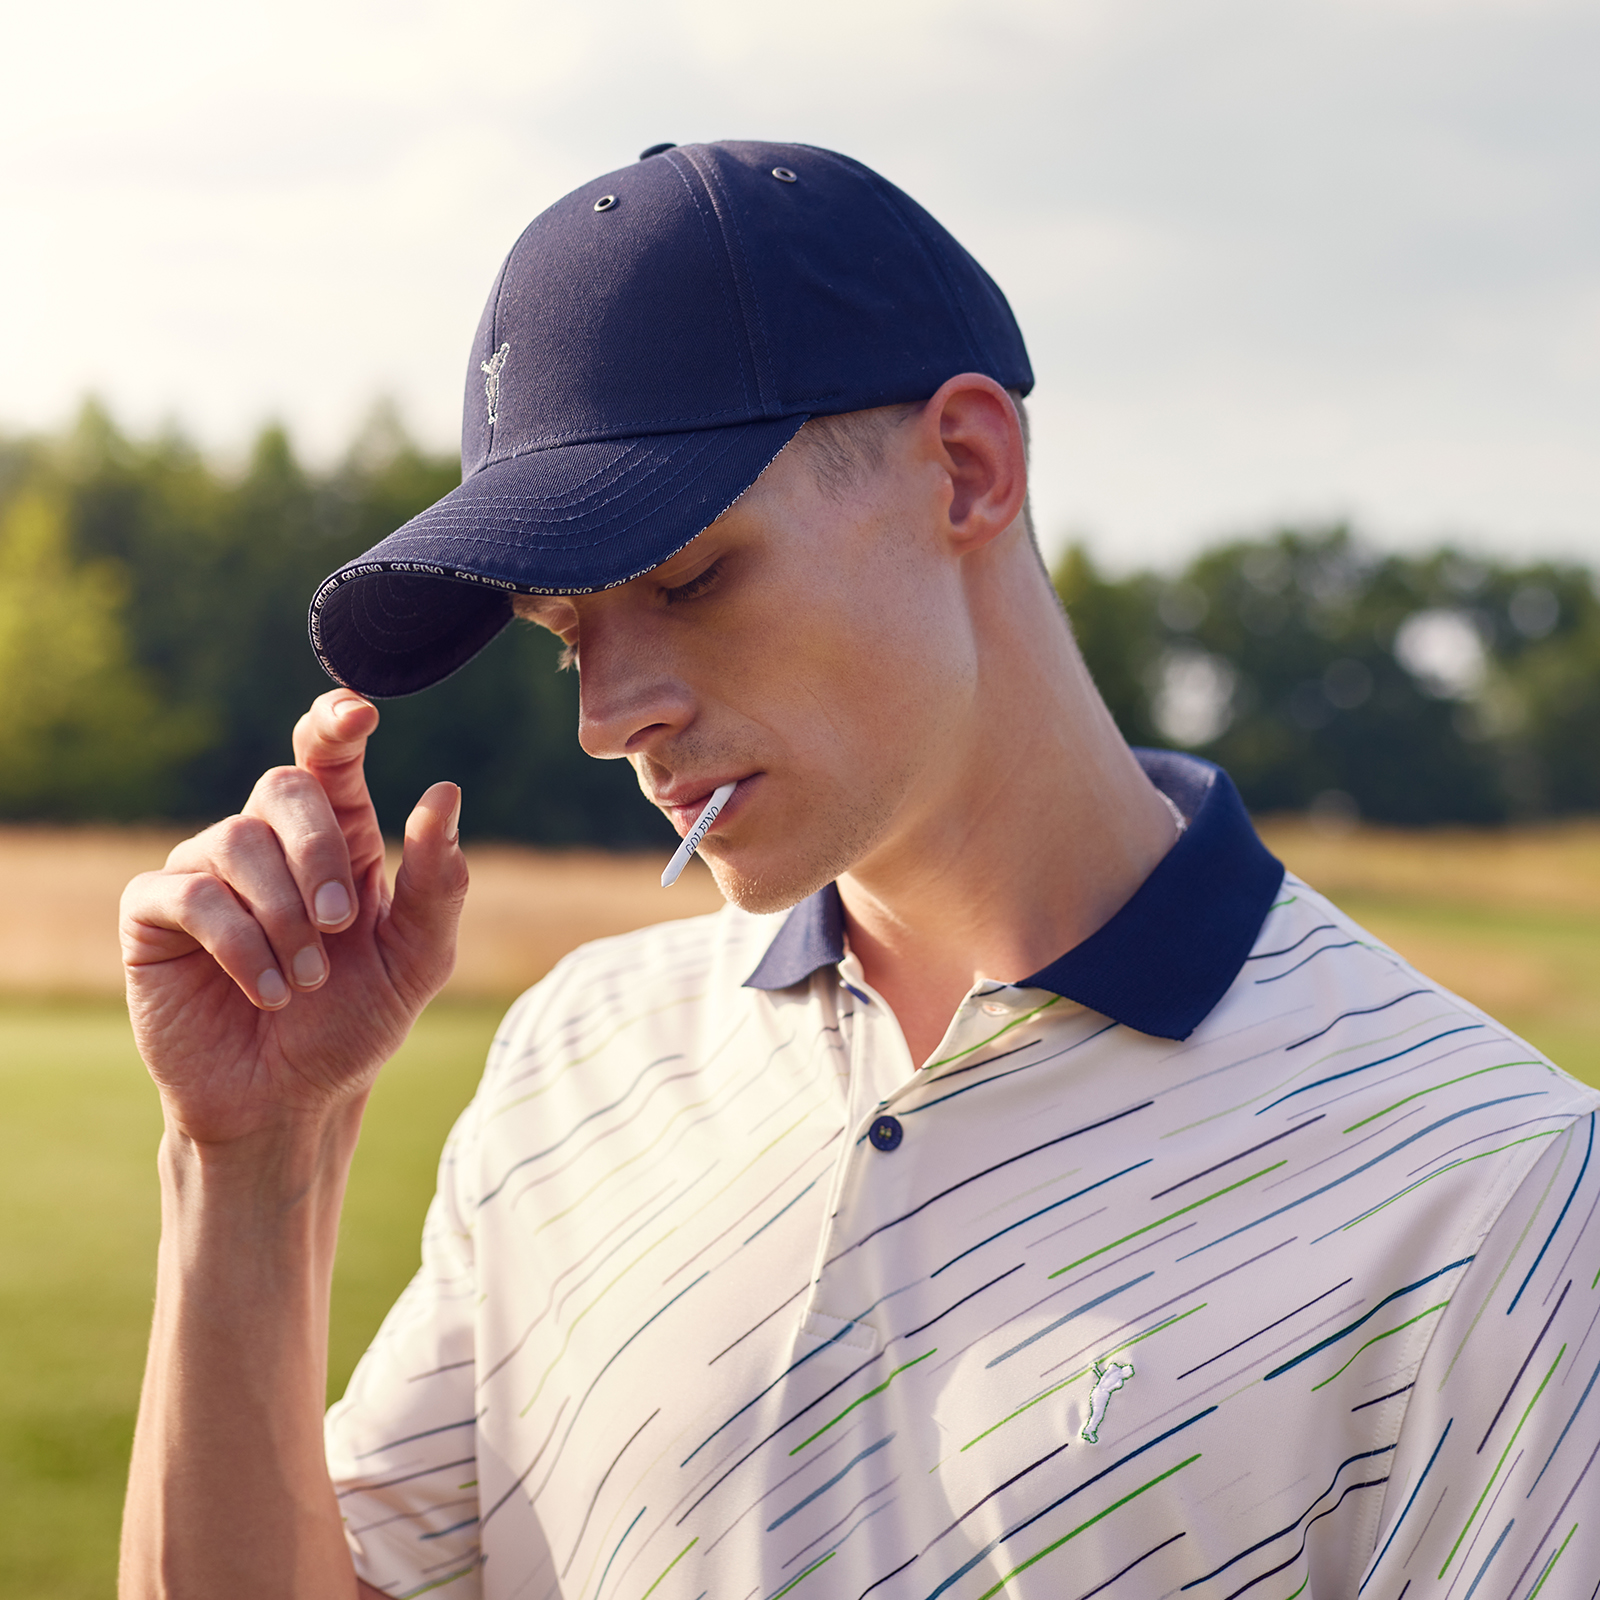 Gorra de golf de algodón para hombre en talla única ajustable